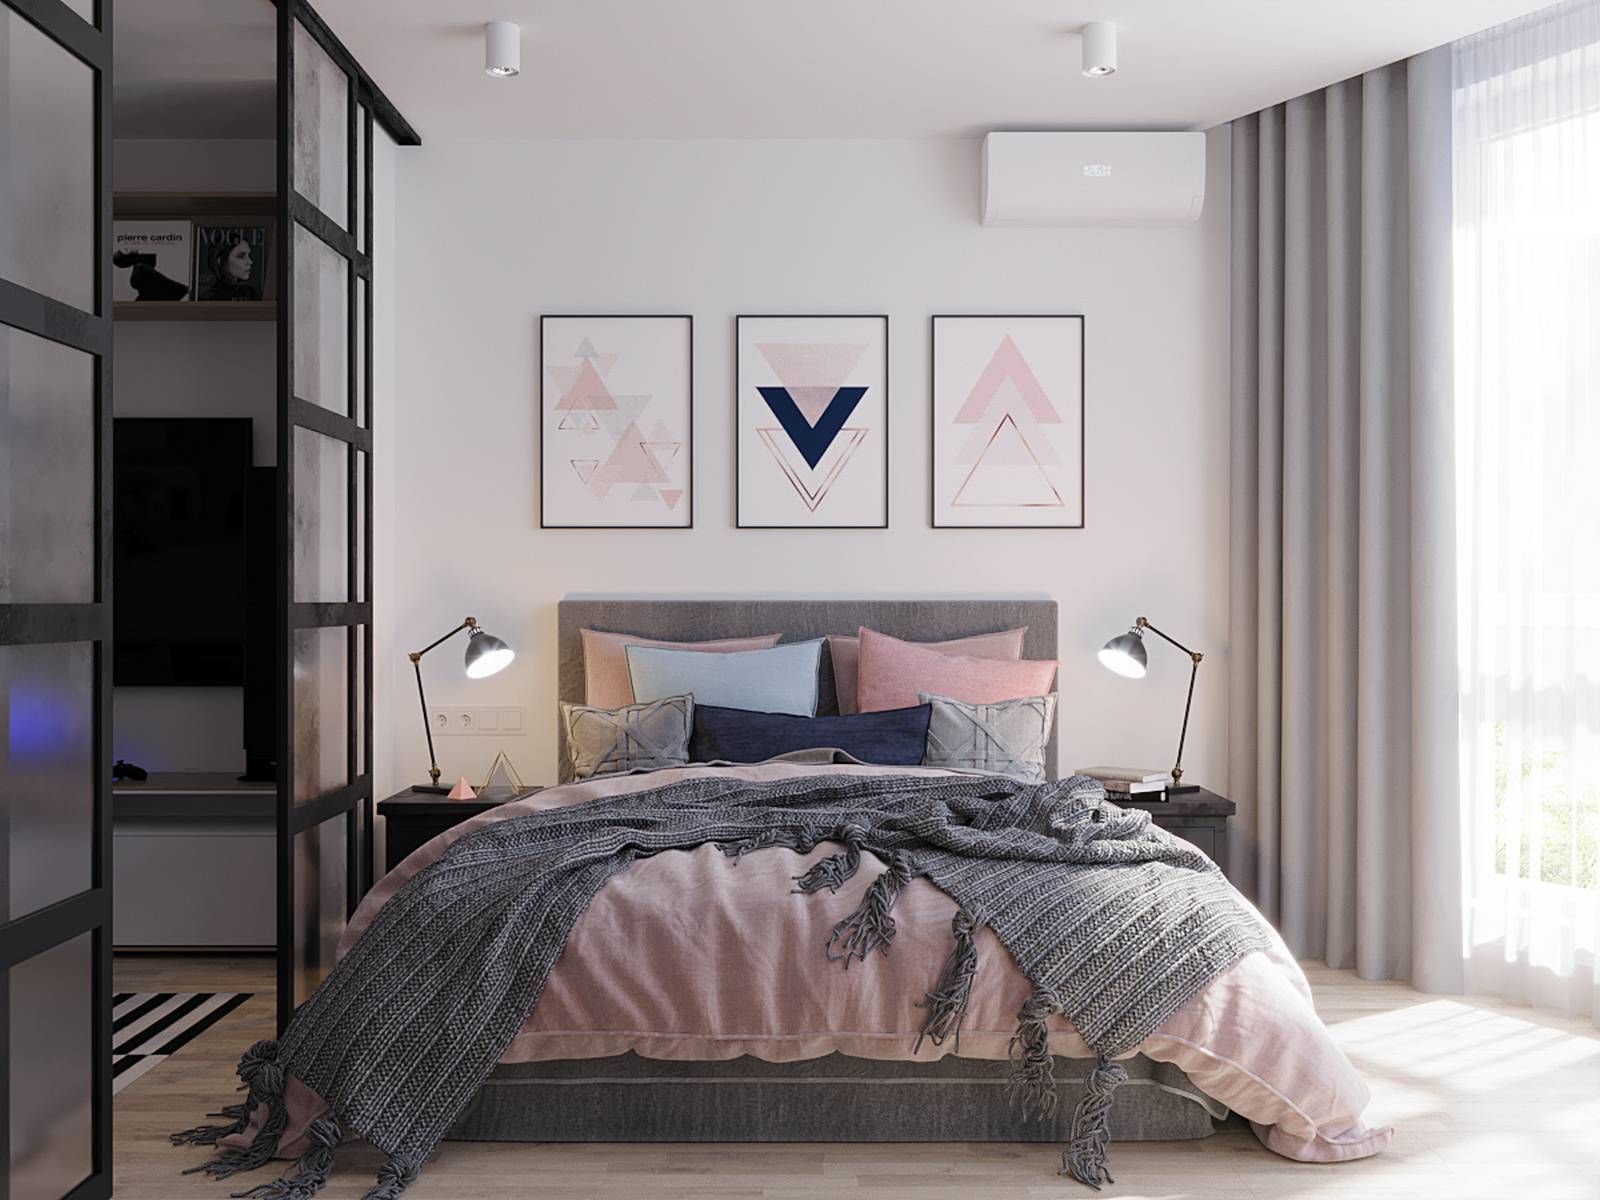 Phòng ngủ nữ tính và xinh đẹp với gam màu xám, hồng phấn, xanh lam nổi bật trên nền tường trắng cùng với những bức tranh đơn giản nhưng không kém phần ấn tượng. Cặp đèn bàn đặt trên 2 chiếc táp đầu giường đối xứng nhau tạo nên vẻ đẹp hài hòa.